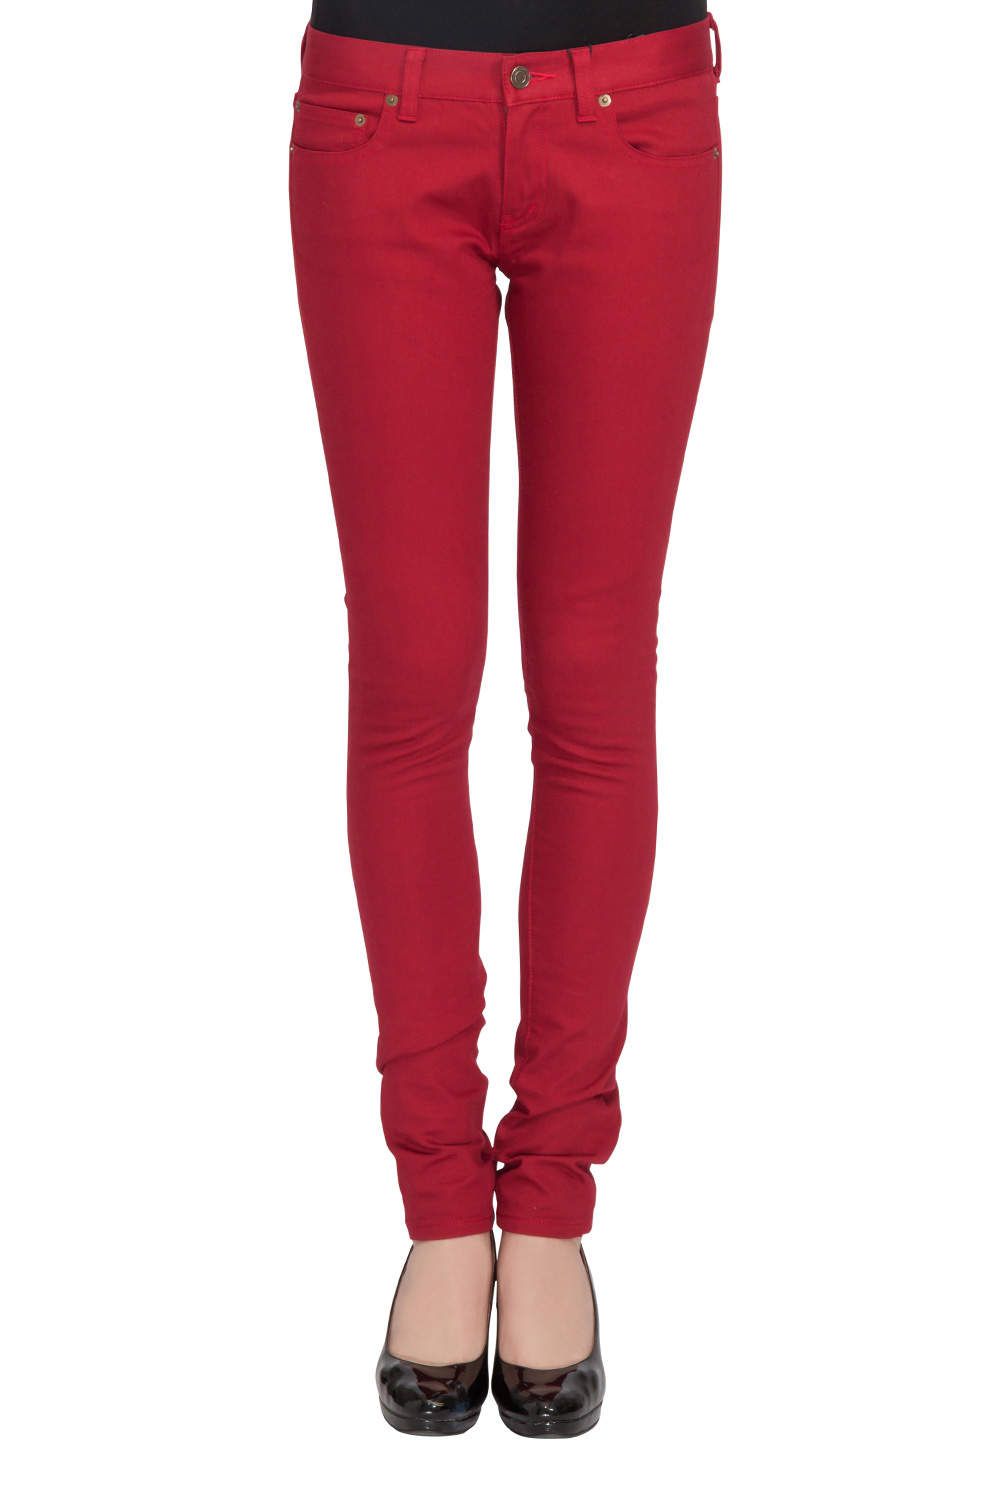 red denim skinny jeans